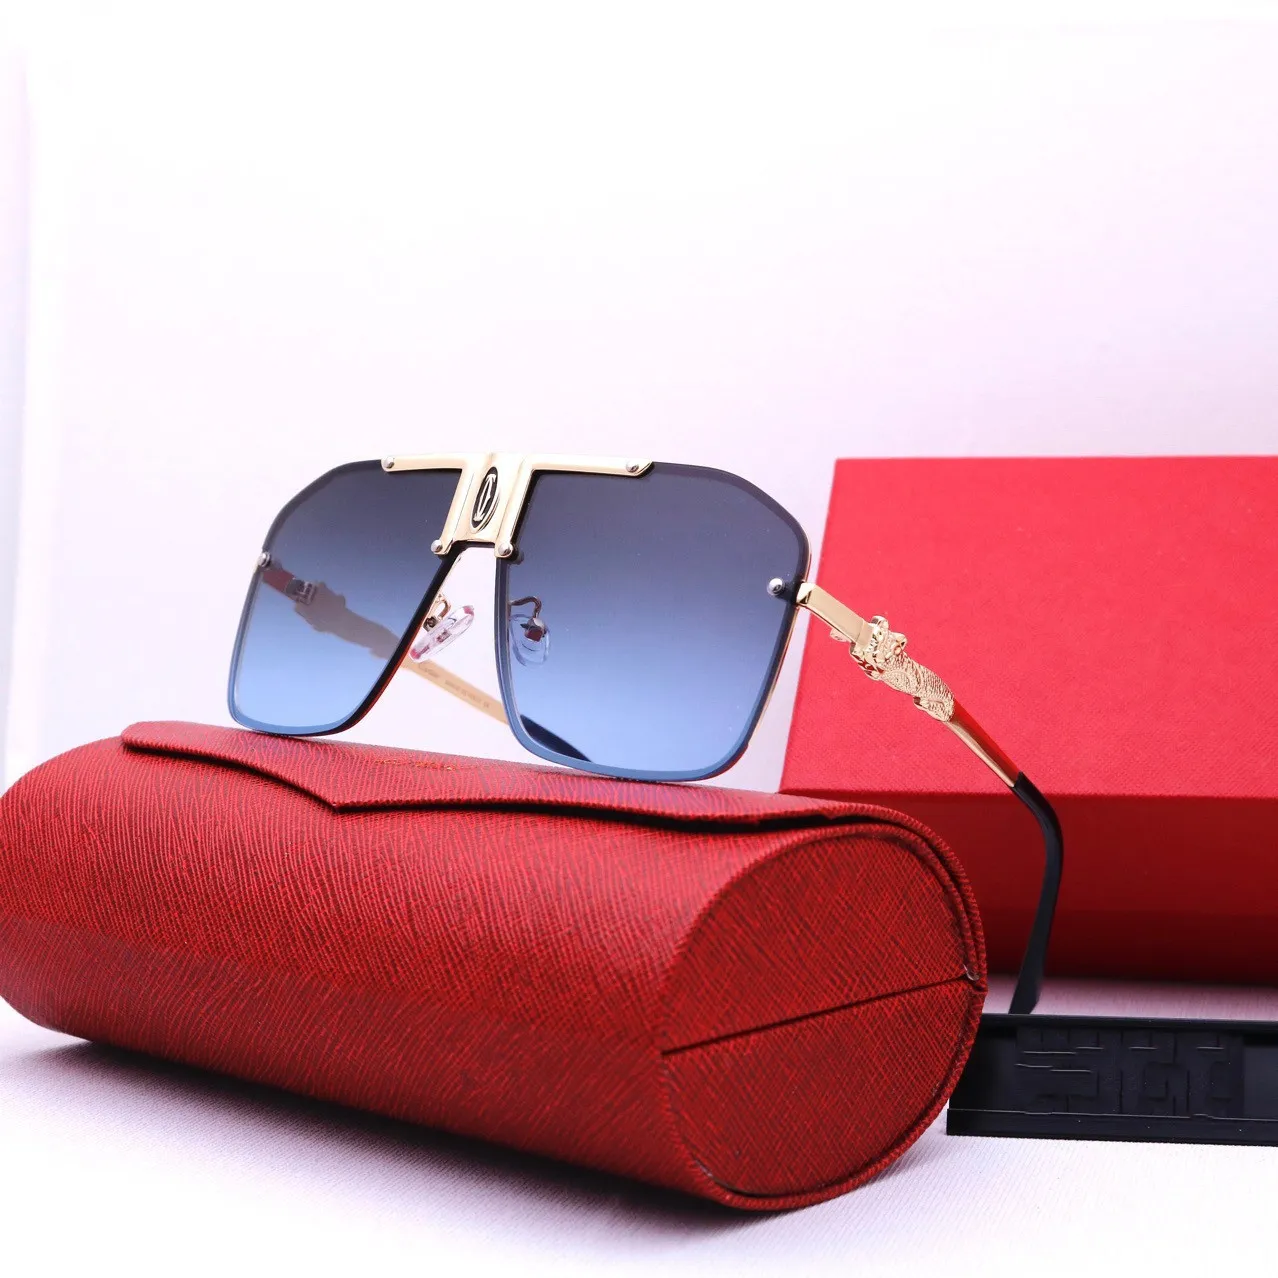 Sonnenbrille Luxusmarke Designerbrille Braun Schwarz Klassische Mode Herren Damen Sonnenbrille Brillenzubehör Qualitätsverpackung W325m